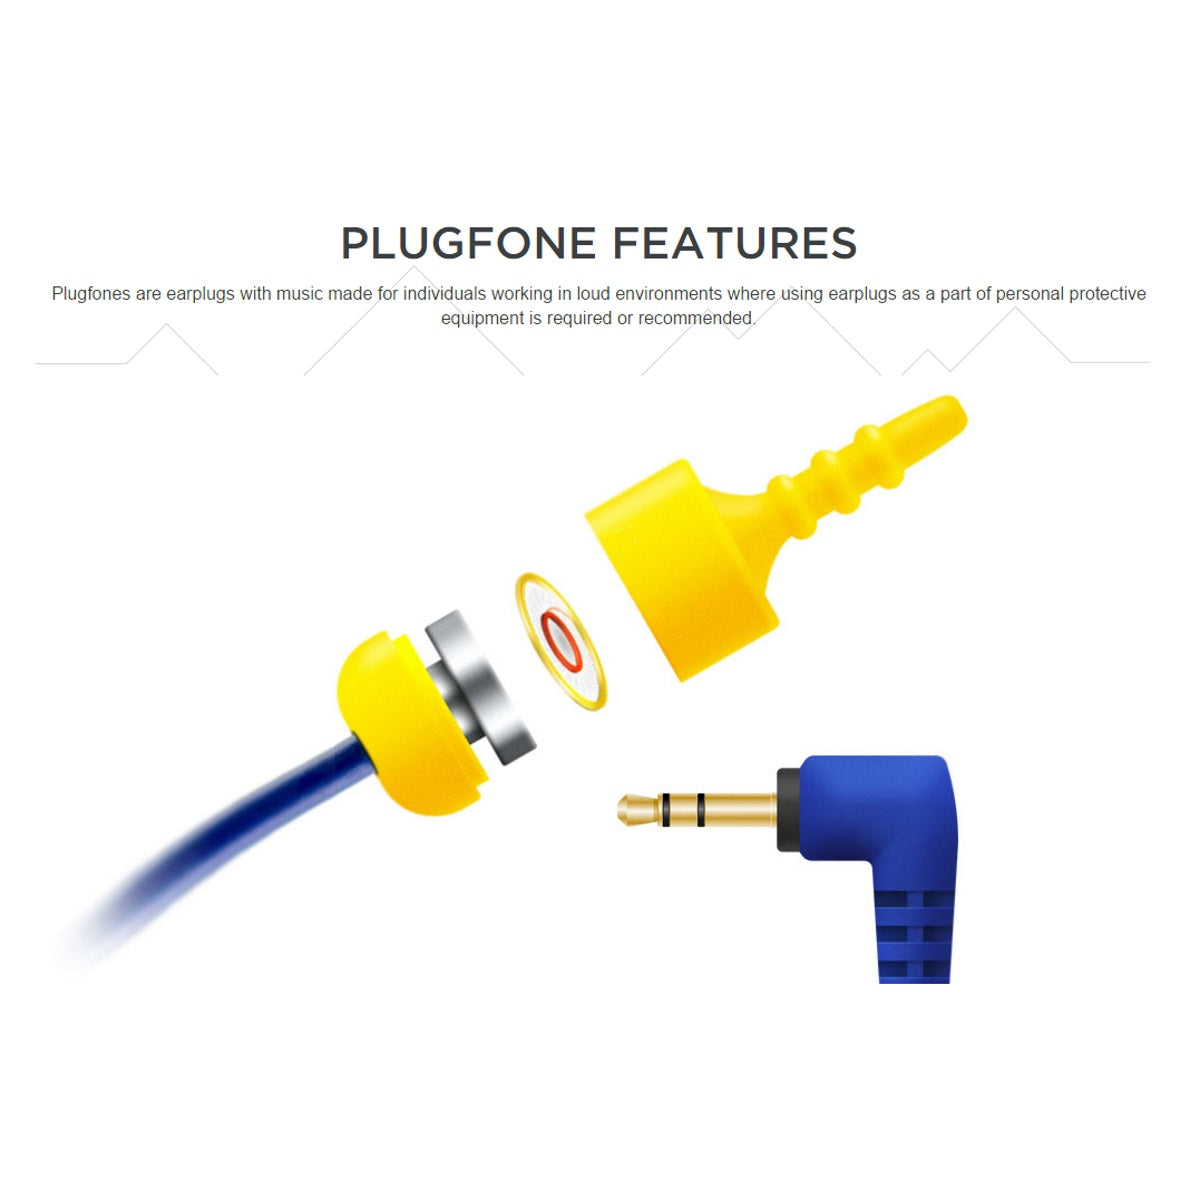 Plugfones Contractor VL Yellow Earplug Headphones